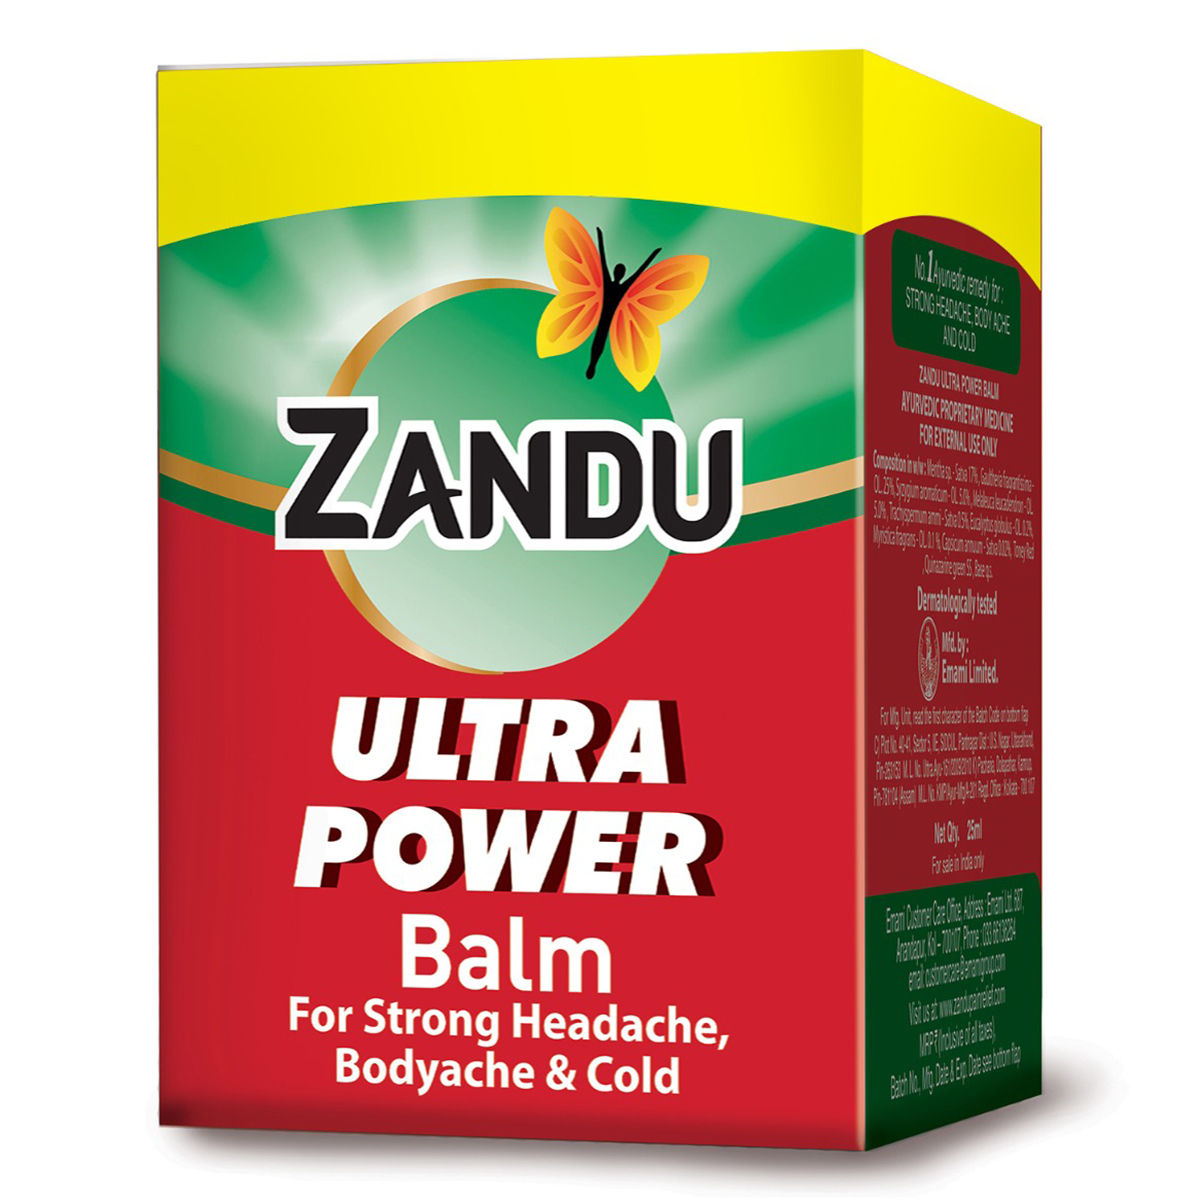 Buy Zandu Ultra Power Balm, 25 ml Online